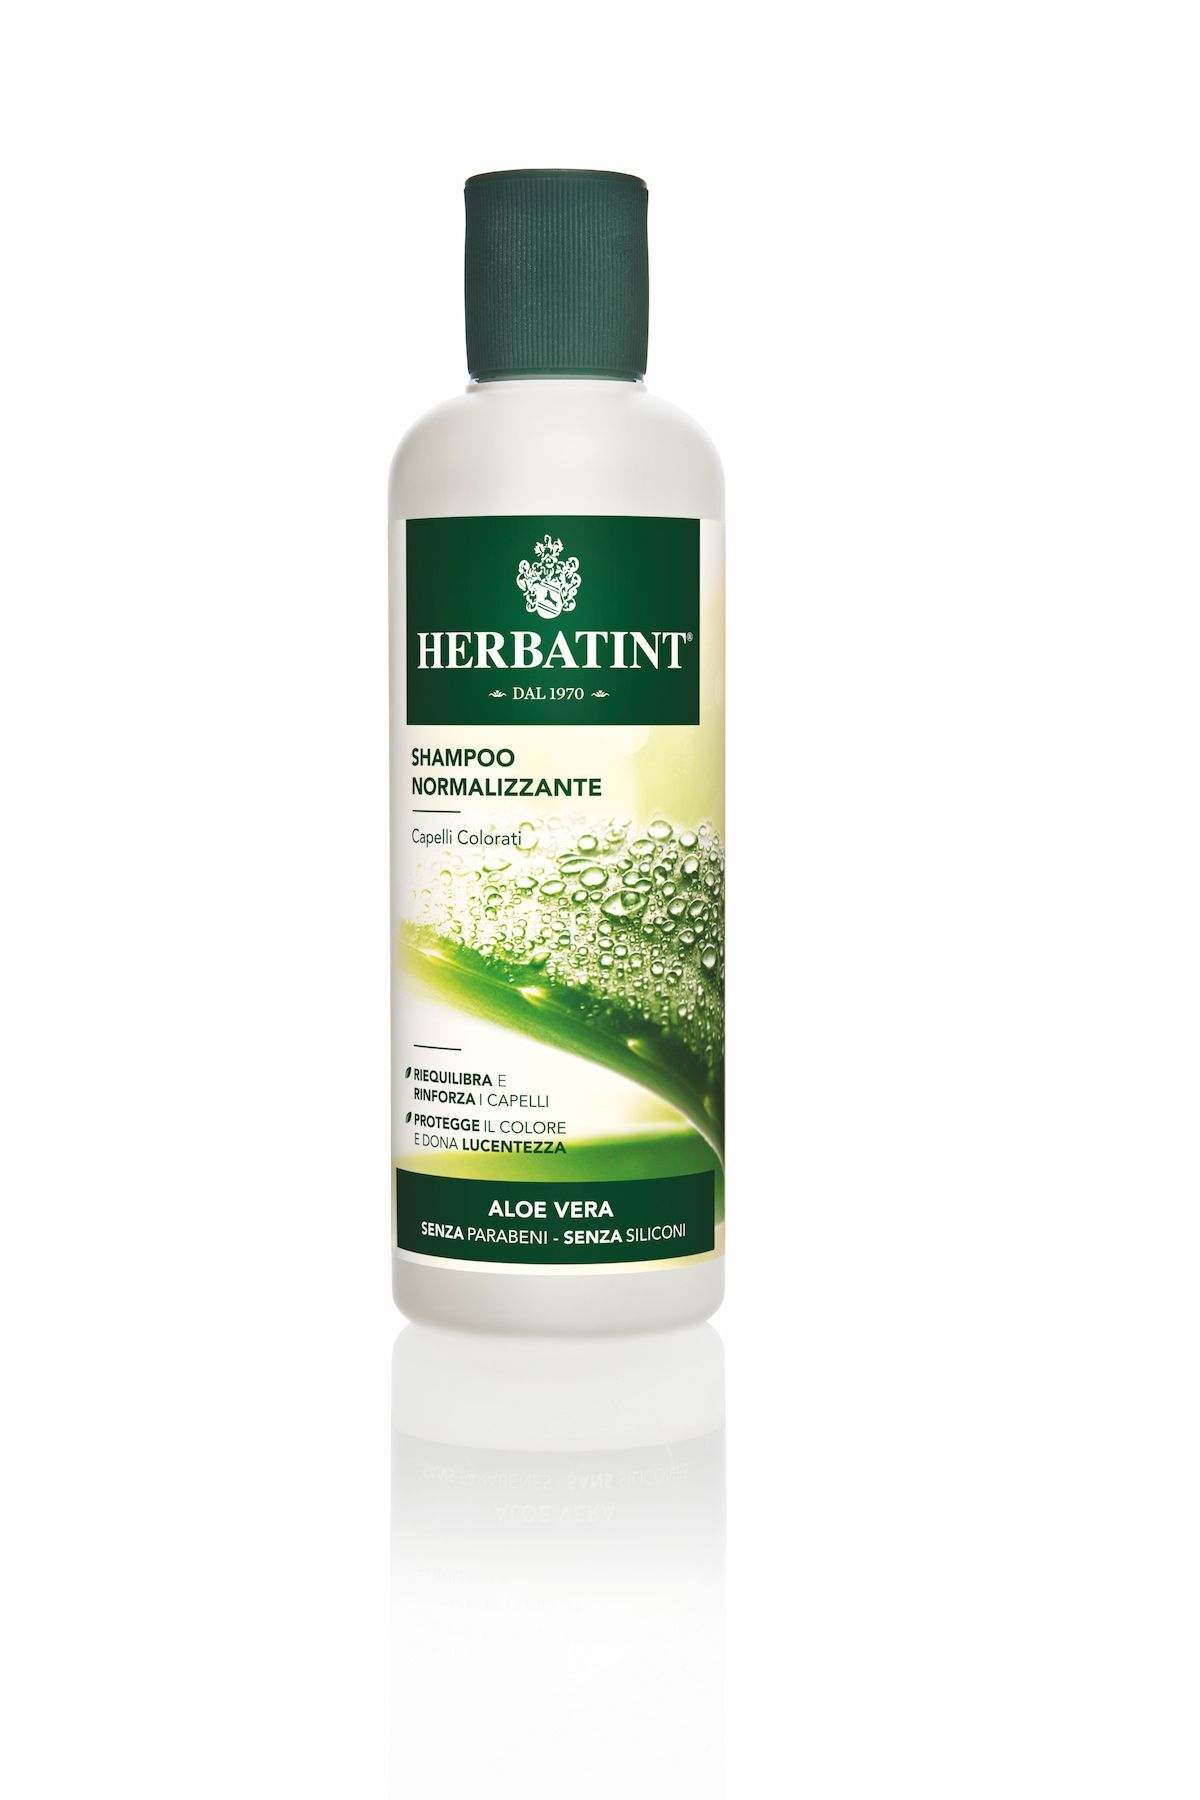 Herbatint Shampoo Normalizzante Aloe Vera 260ml